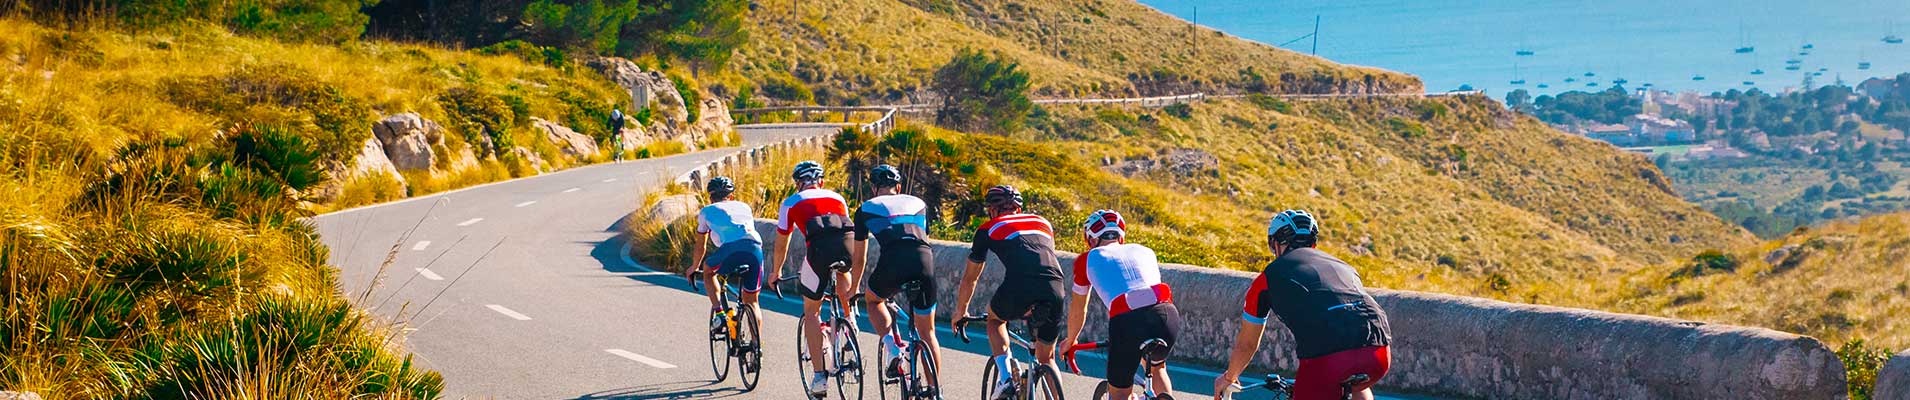 Hoteles para ciclistas con Mix Hoteles en Mallorca